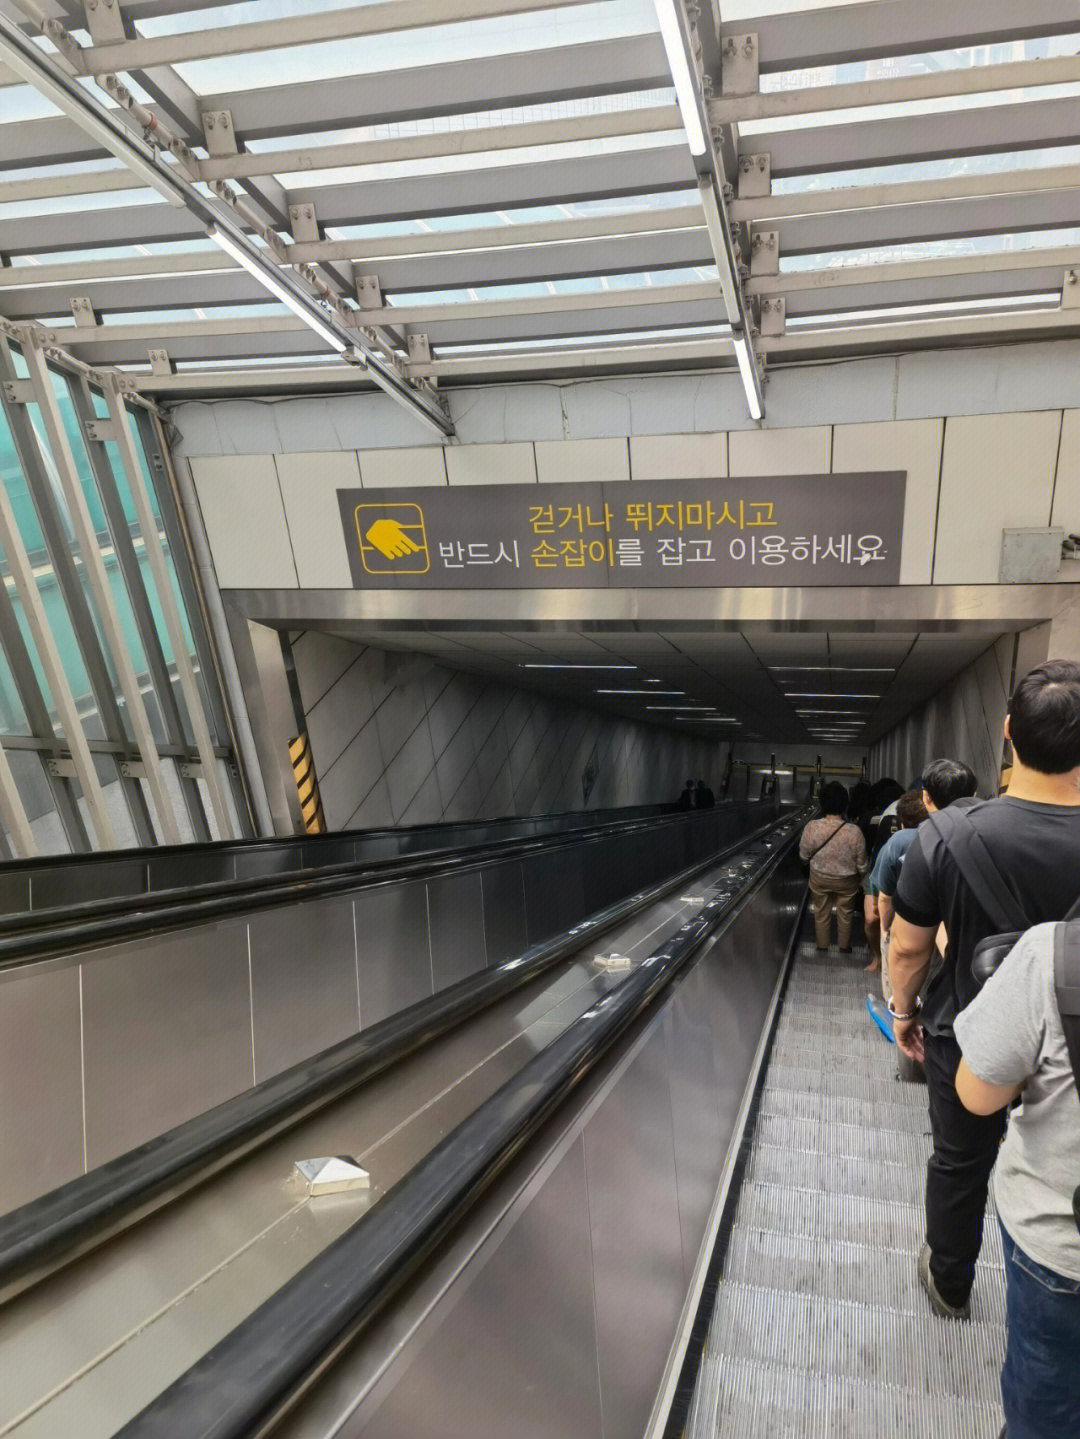 首尔地铁6号线图片